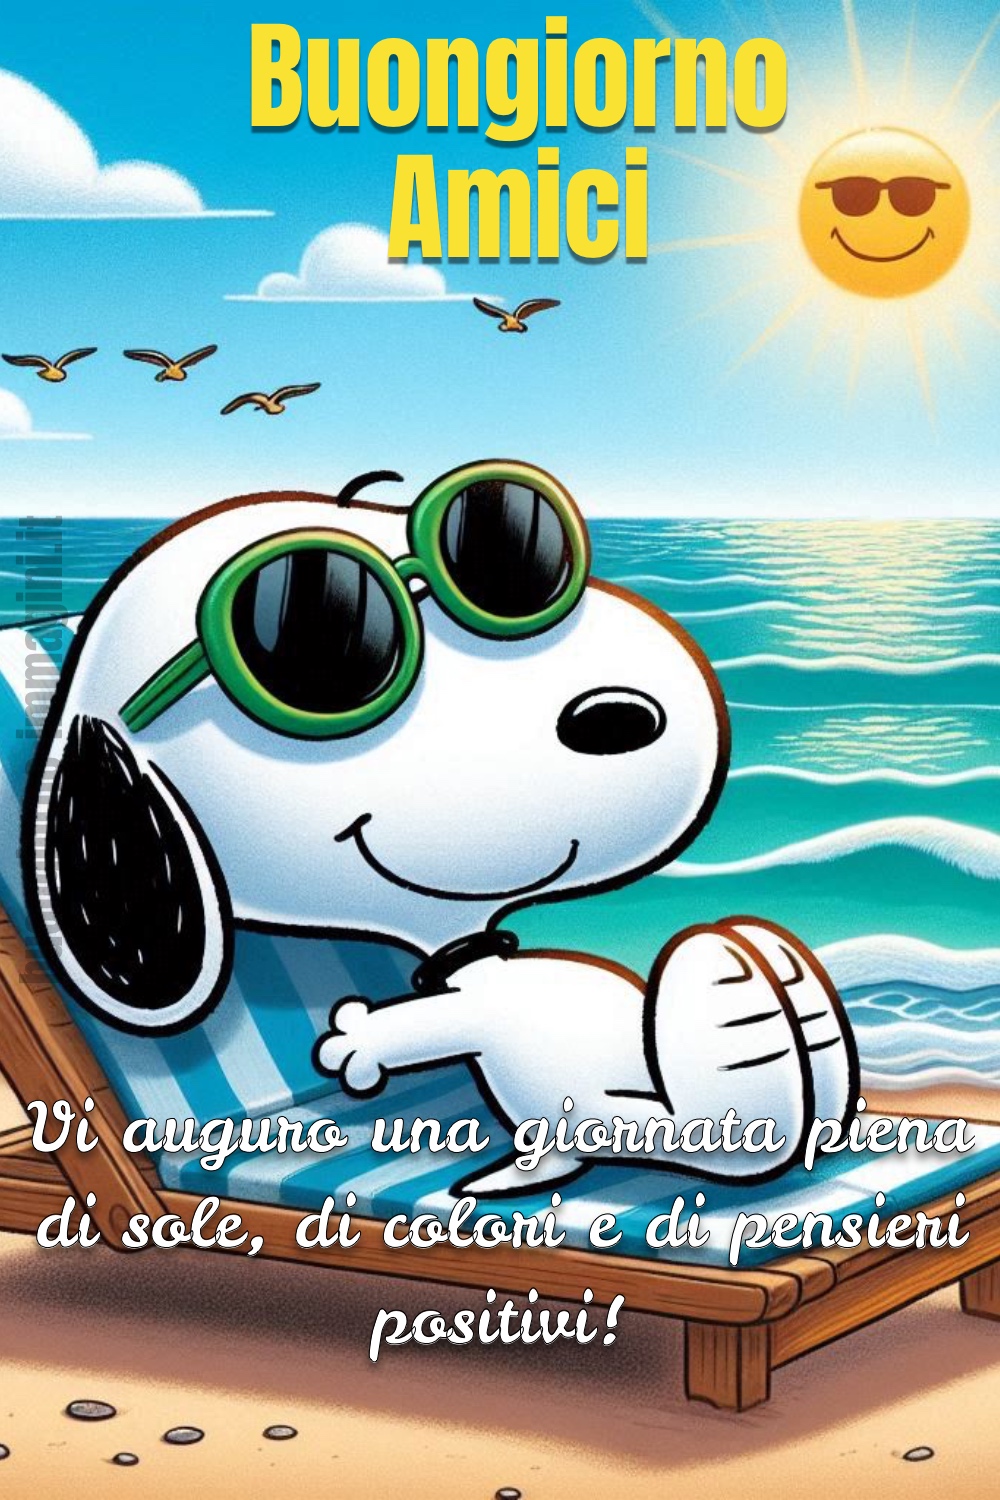 Snoopy prende il sole ed augura il buongiorno agli amici